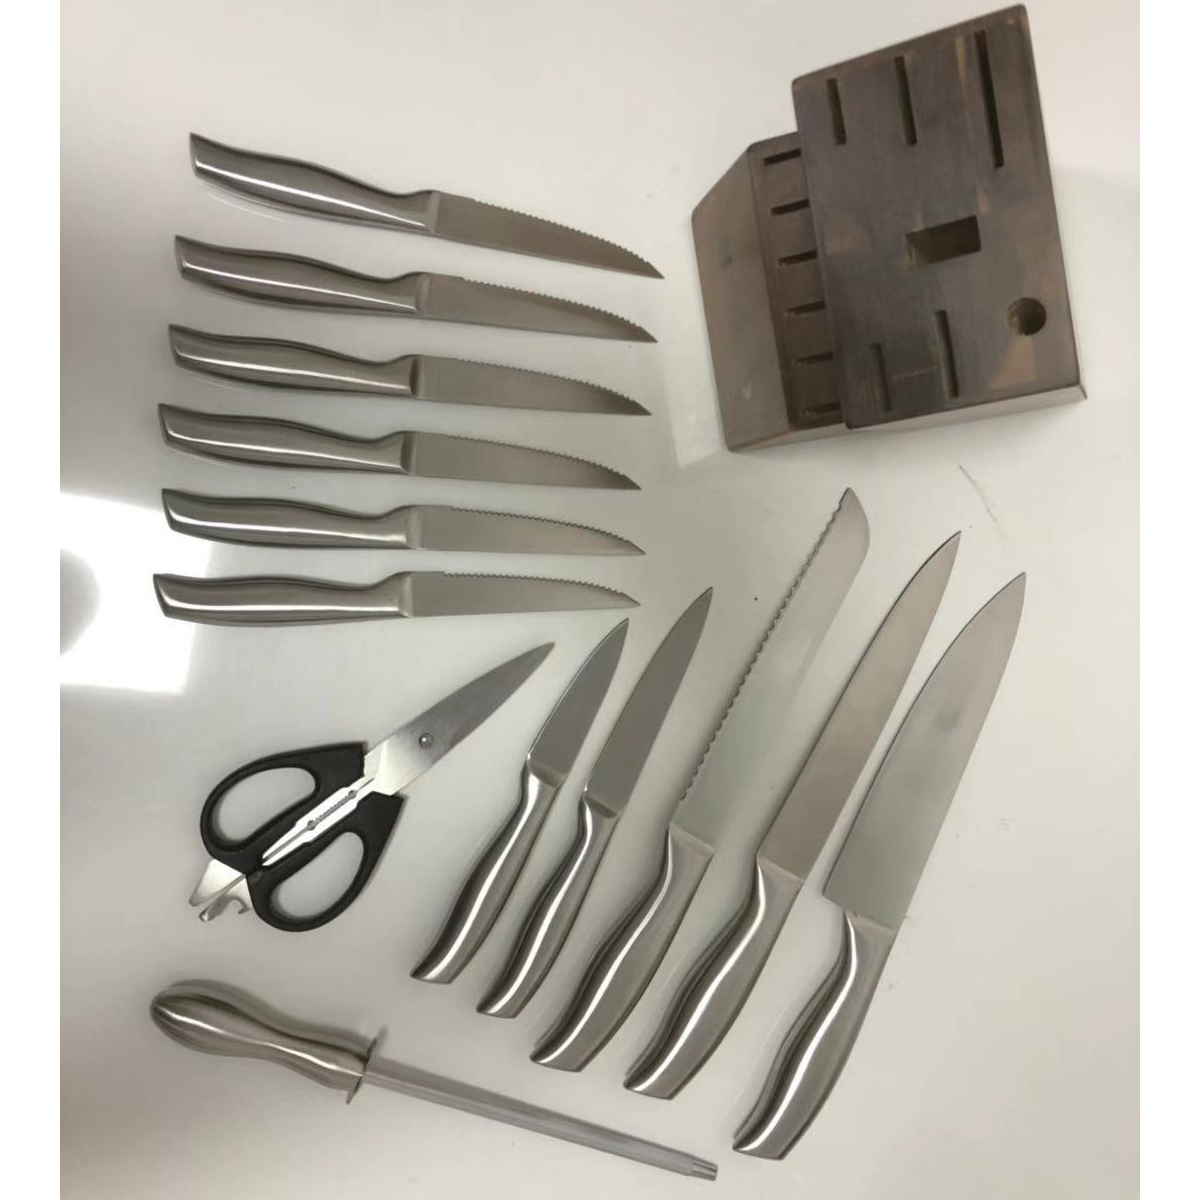 Knives set ORKN013